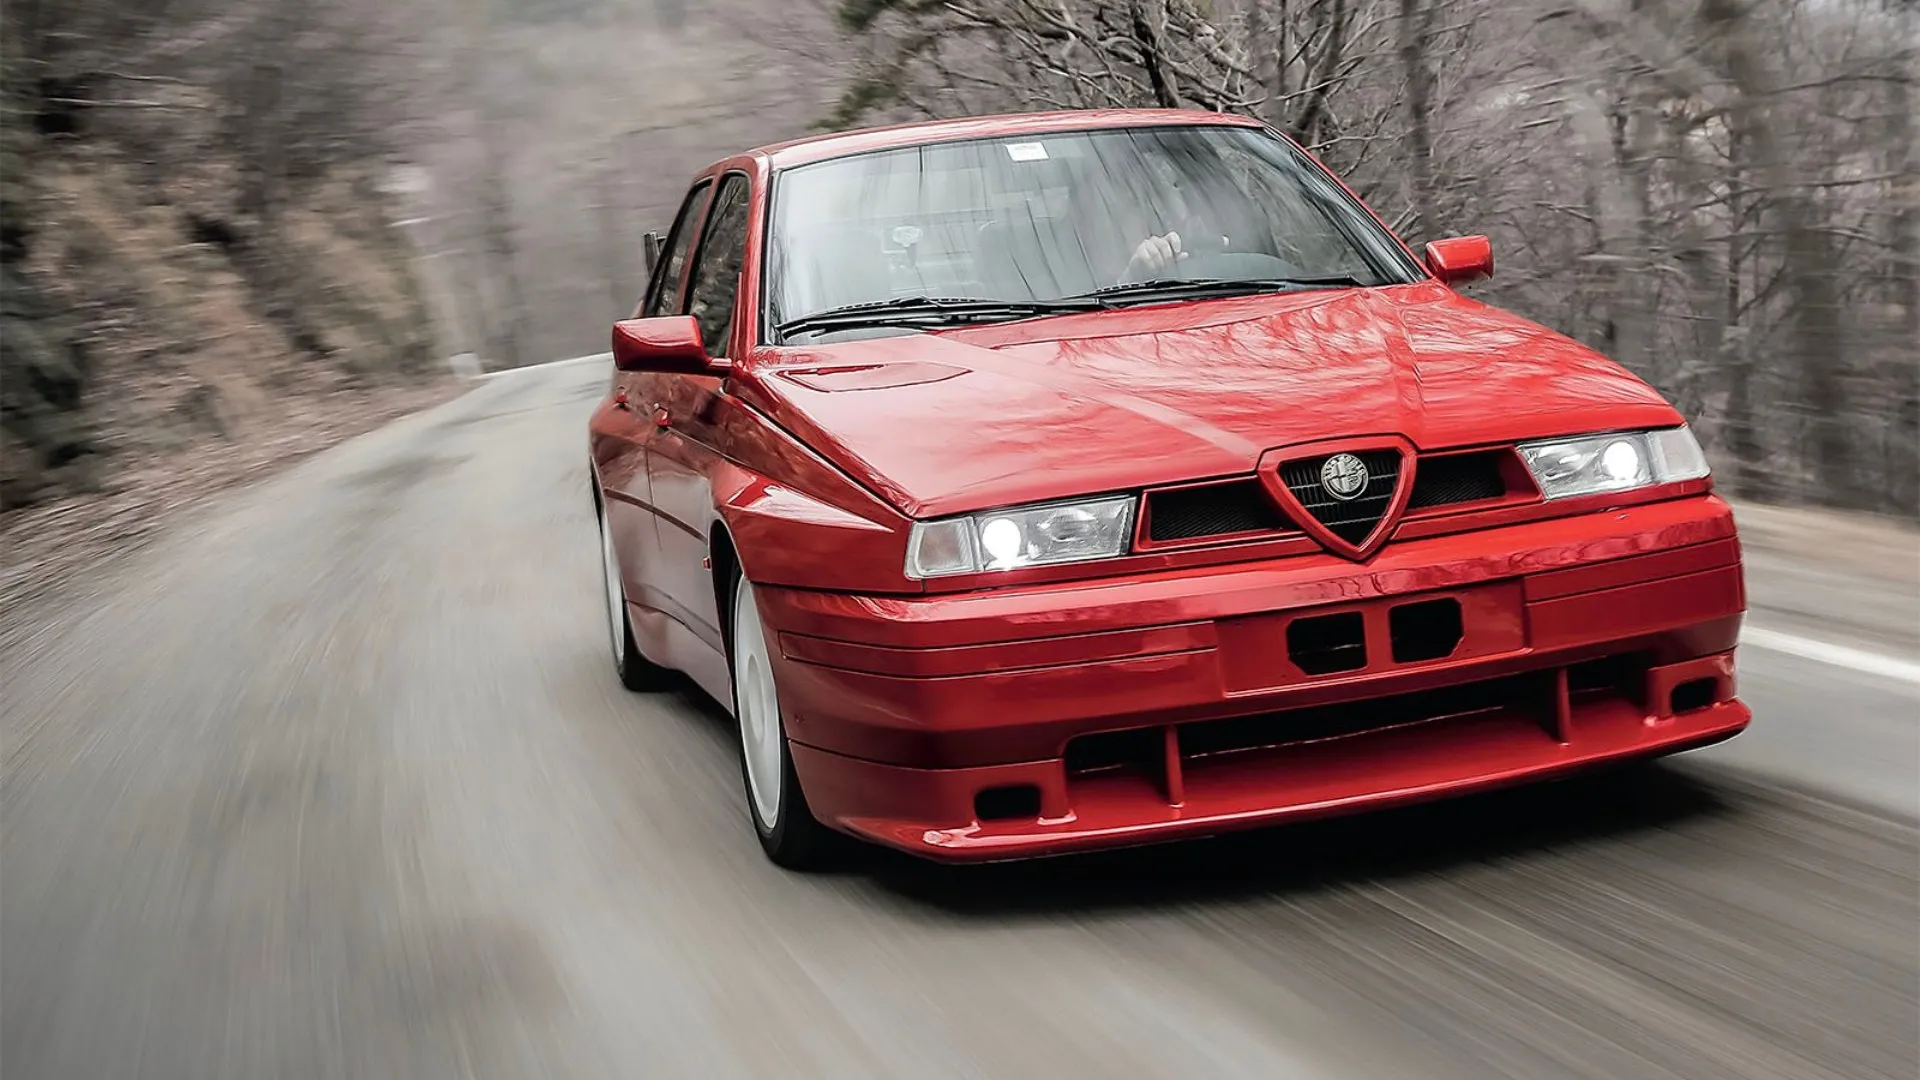 Coche del día: Alfa Romeo 155 GTA Stradale